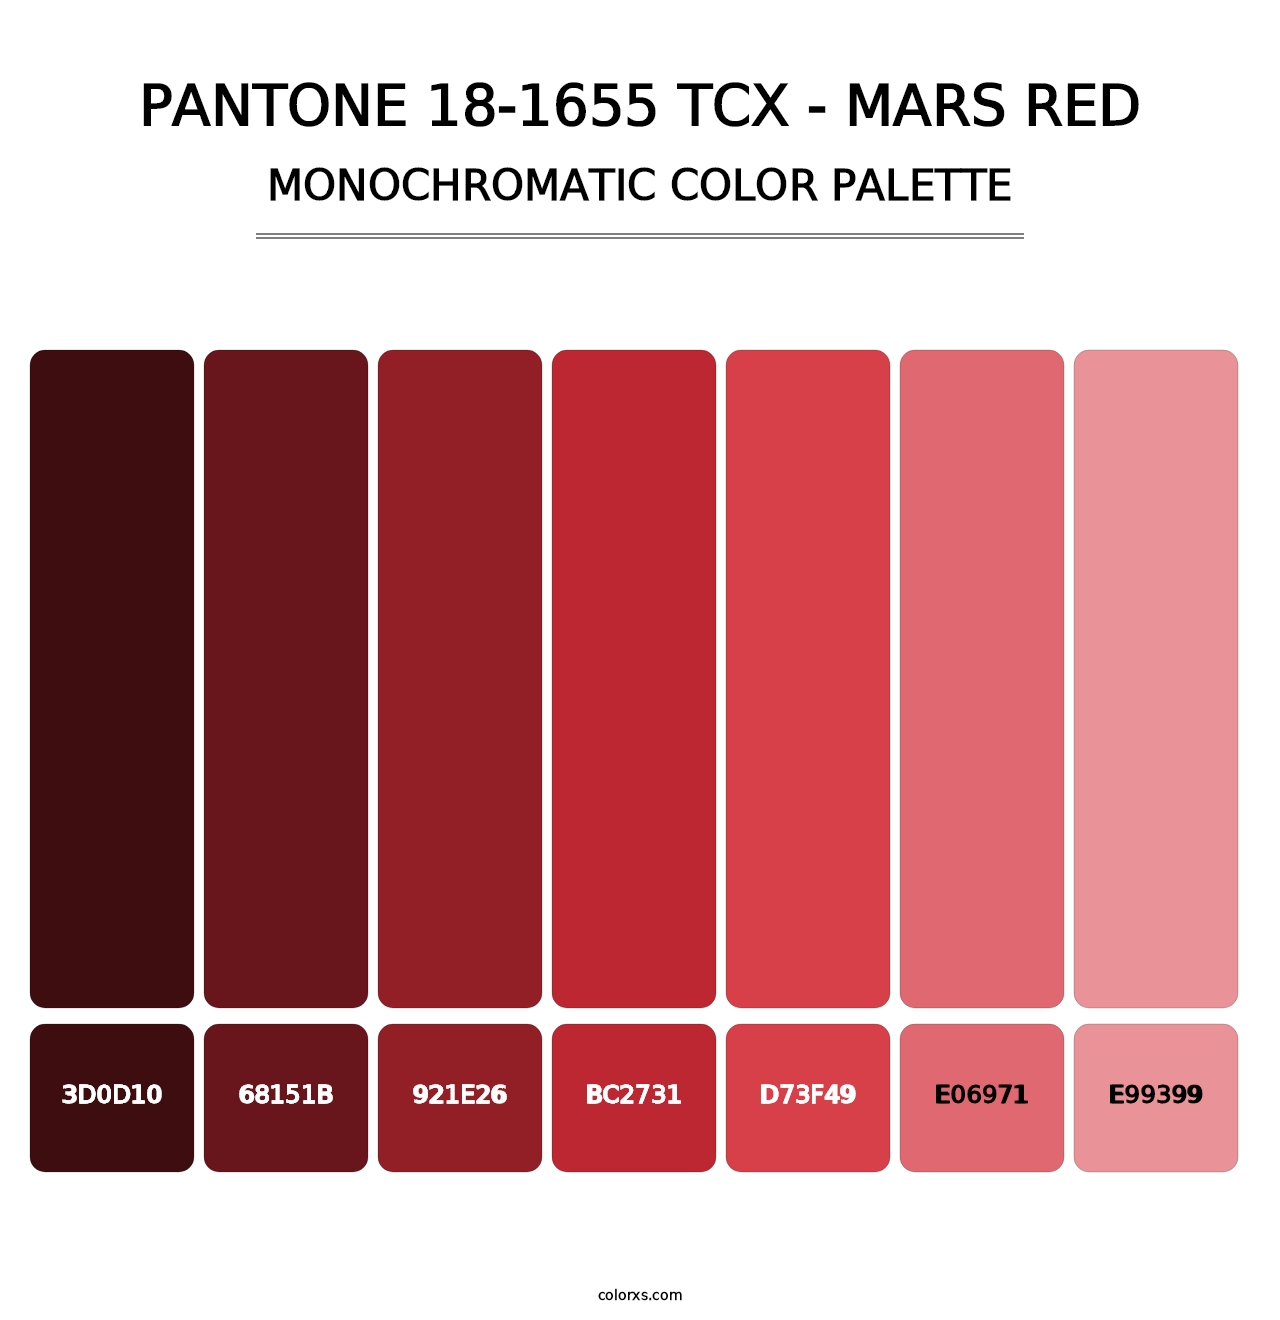 PANTONE 18-1655 TCX - Mars Red - Monochromatic Color Palette